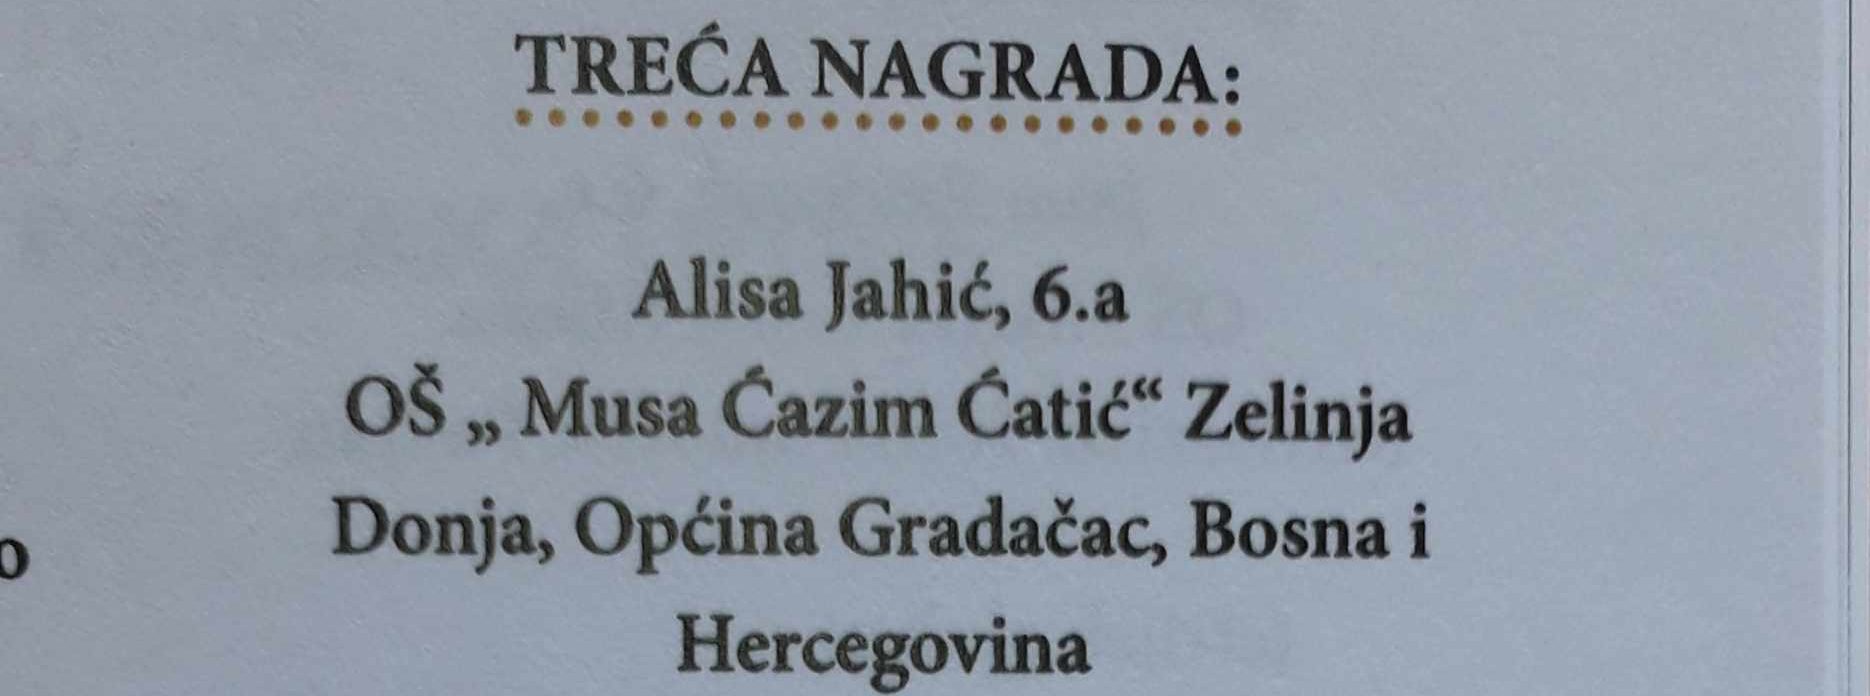 Jahić Alisa osvojila treće mjesto na međunarodnim susretima haiku pjesnika